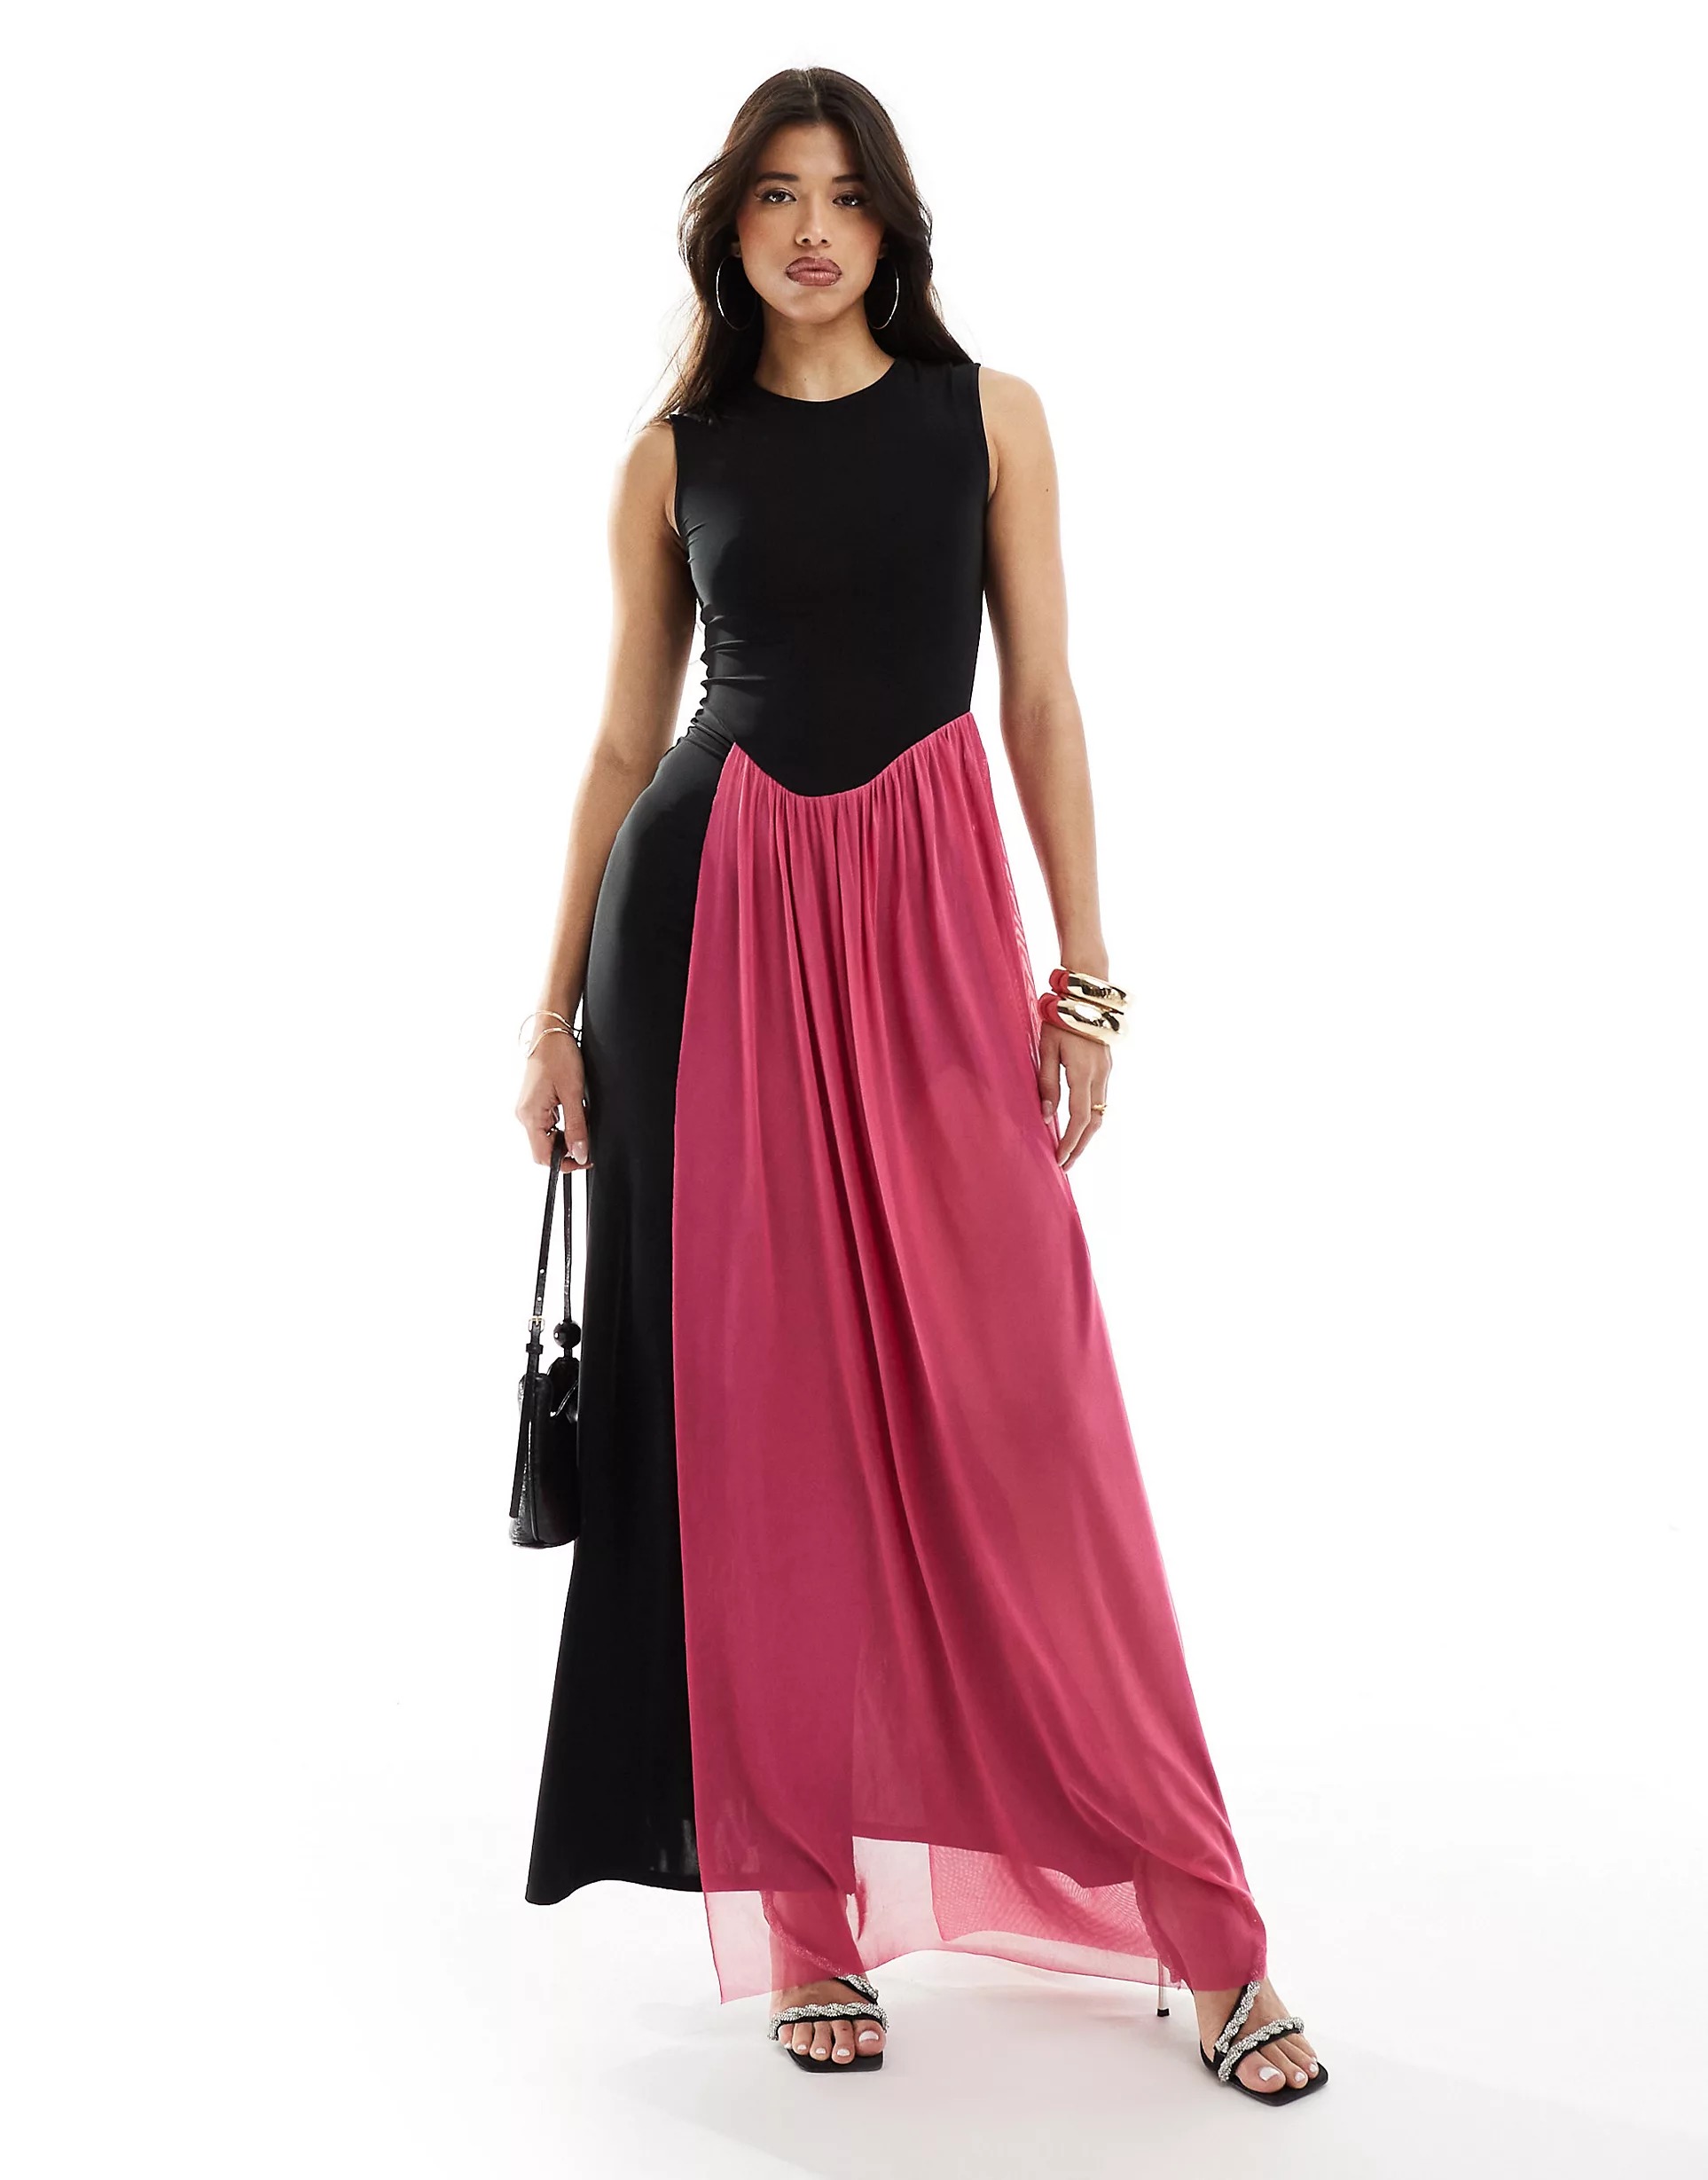 Платье макси Asos Sleeveless Drape Detail, черный/розовый платье oodji без рукавов черное 44 размер